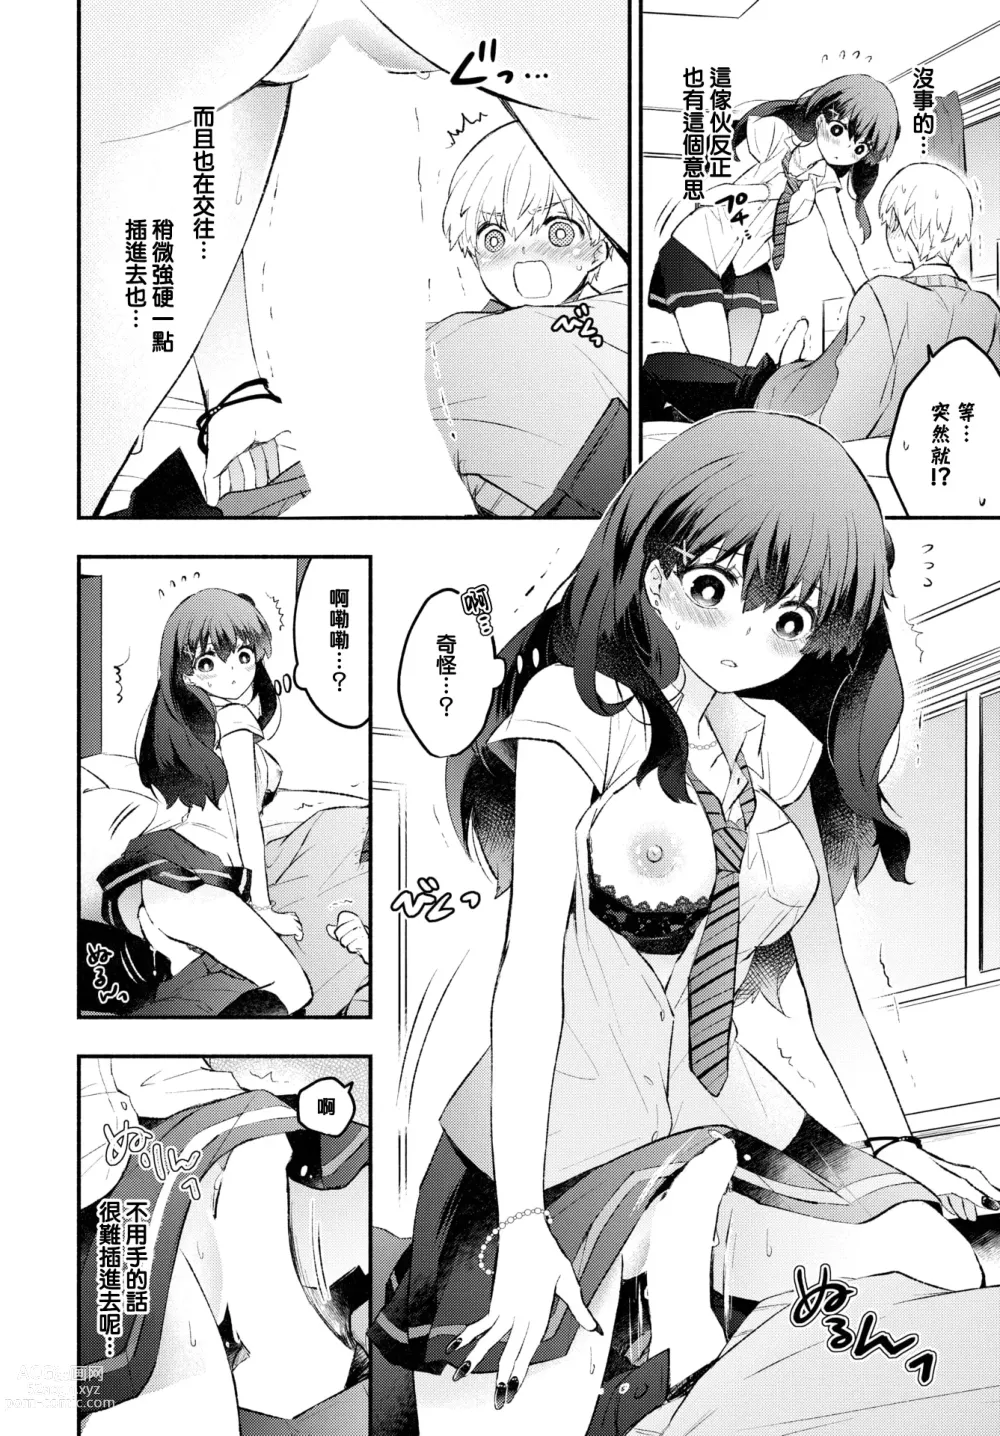 Page 9 of manga Usotsuki Kanojo